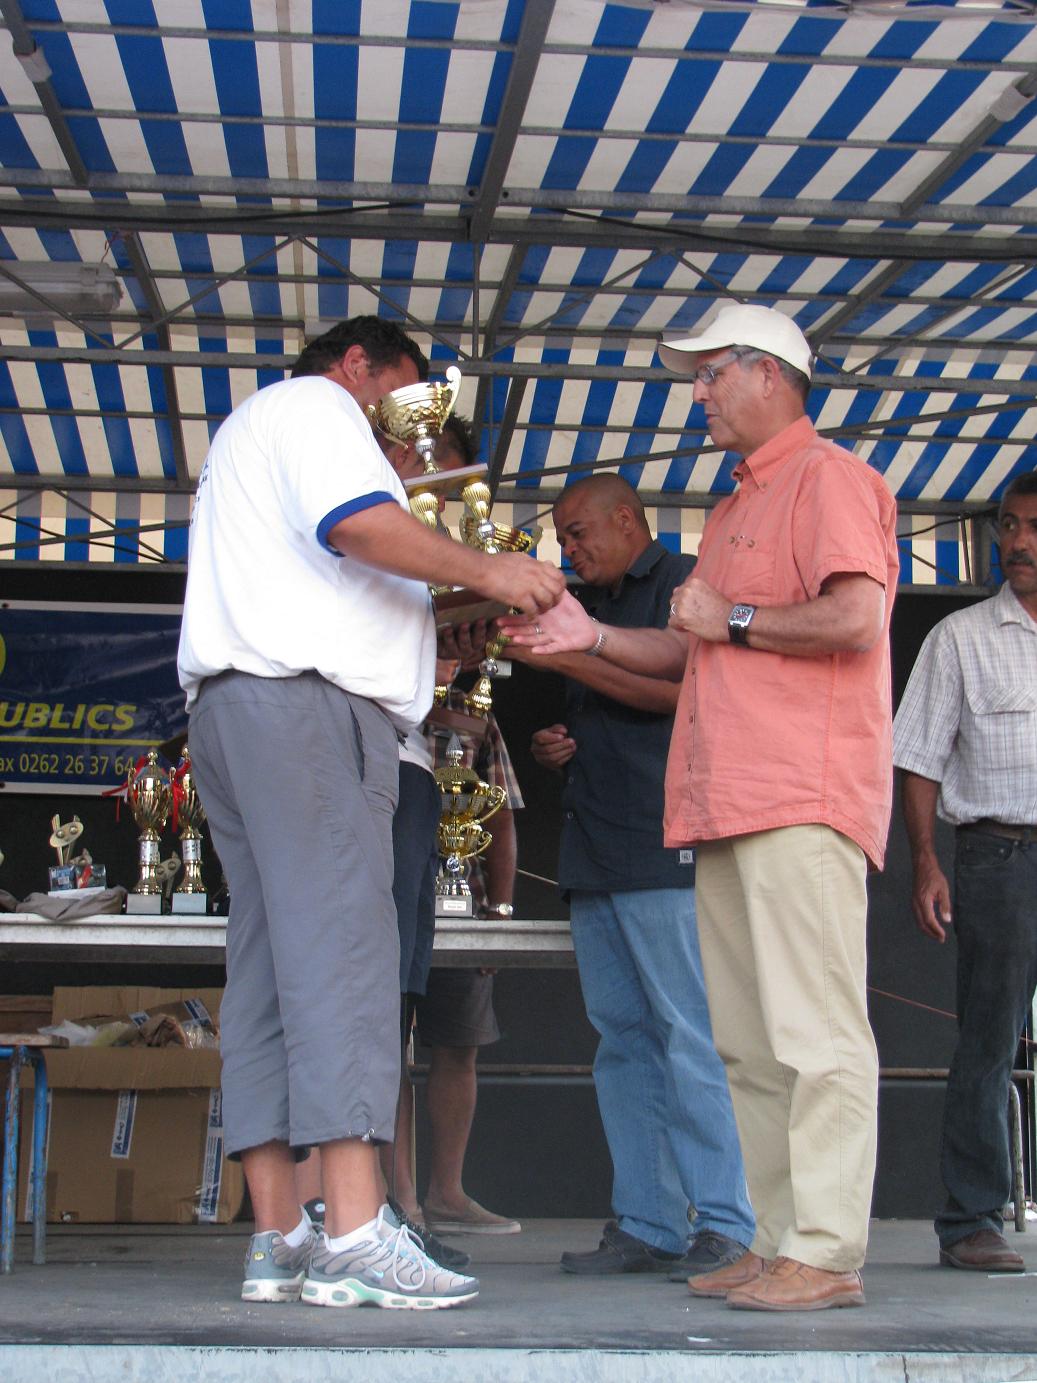 Remise du trophée par M. Lacouture maire de l'Etang Salé